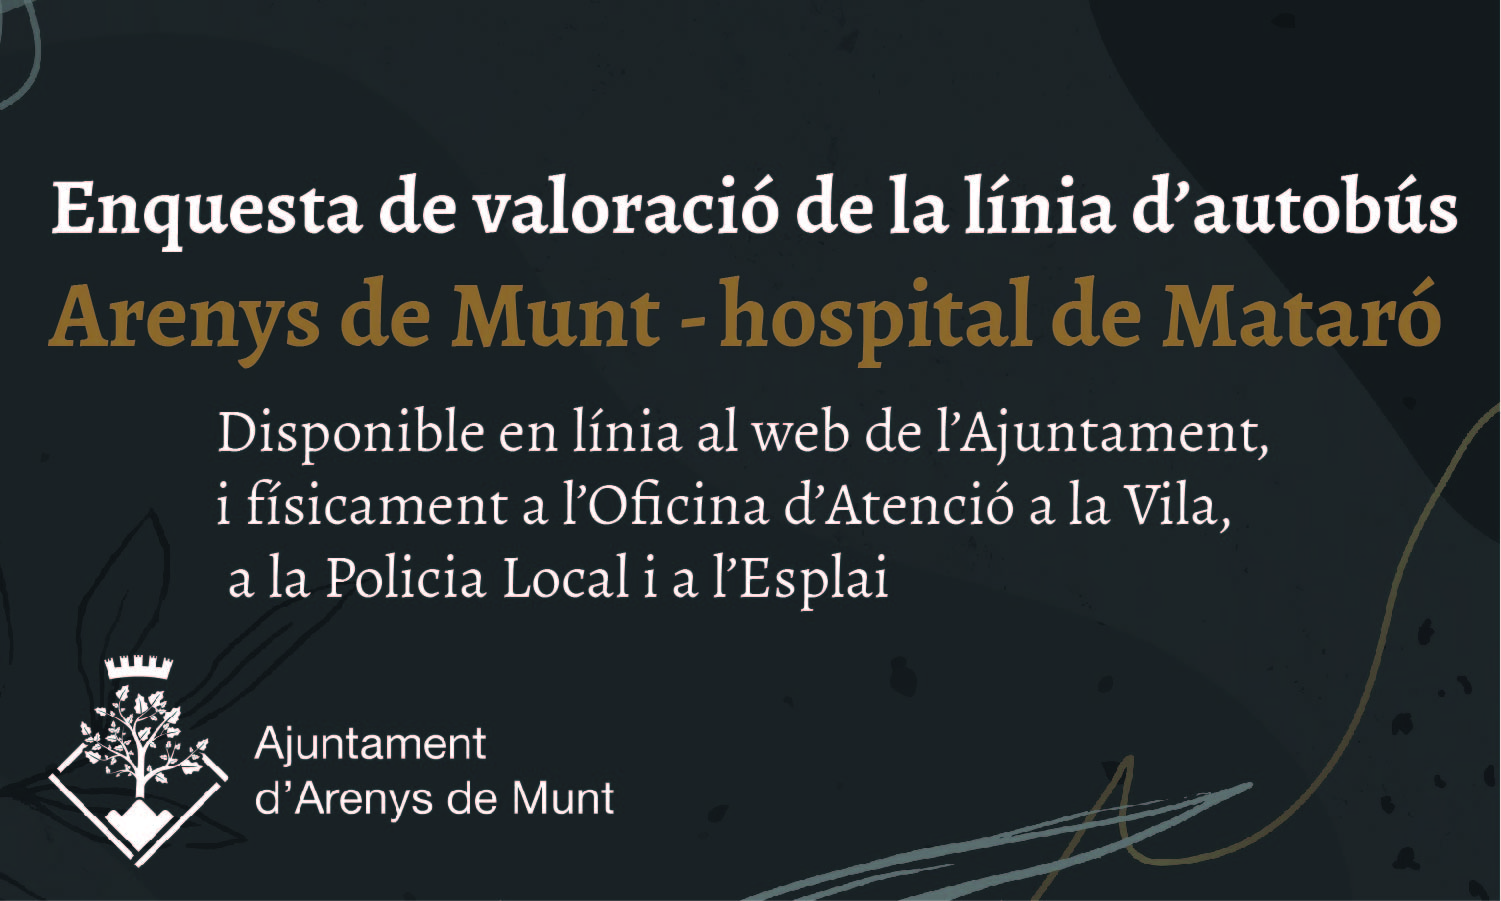 L'Ajuntament fa una enquesta per valorar l'autobús d'Arenys de Munt a l'hospital de Mataró